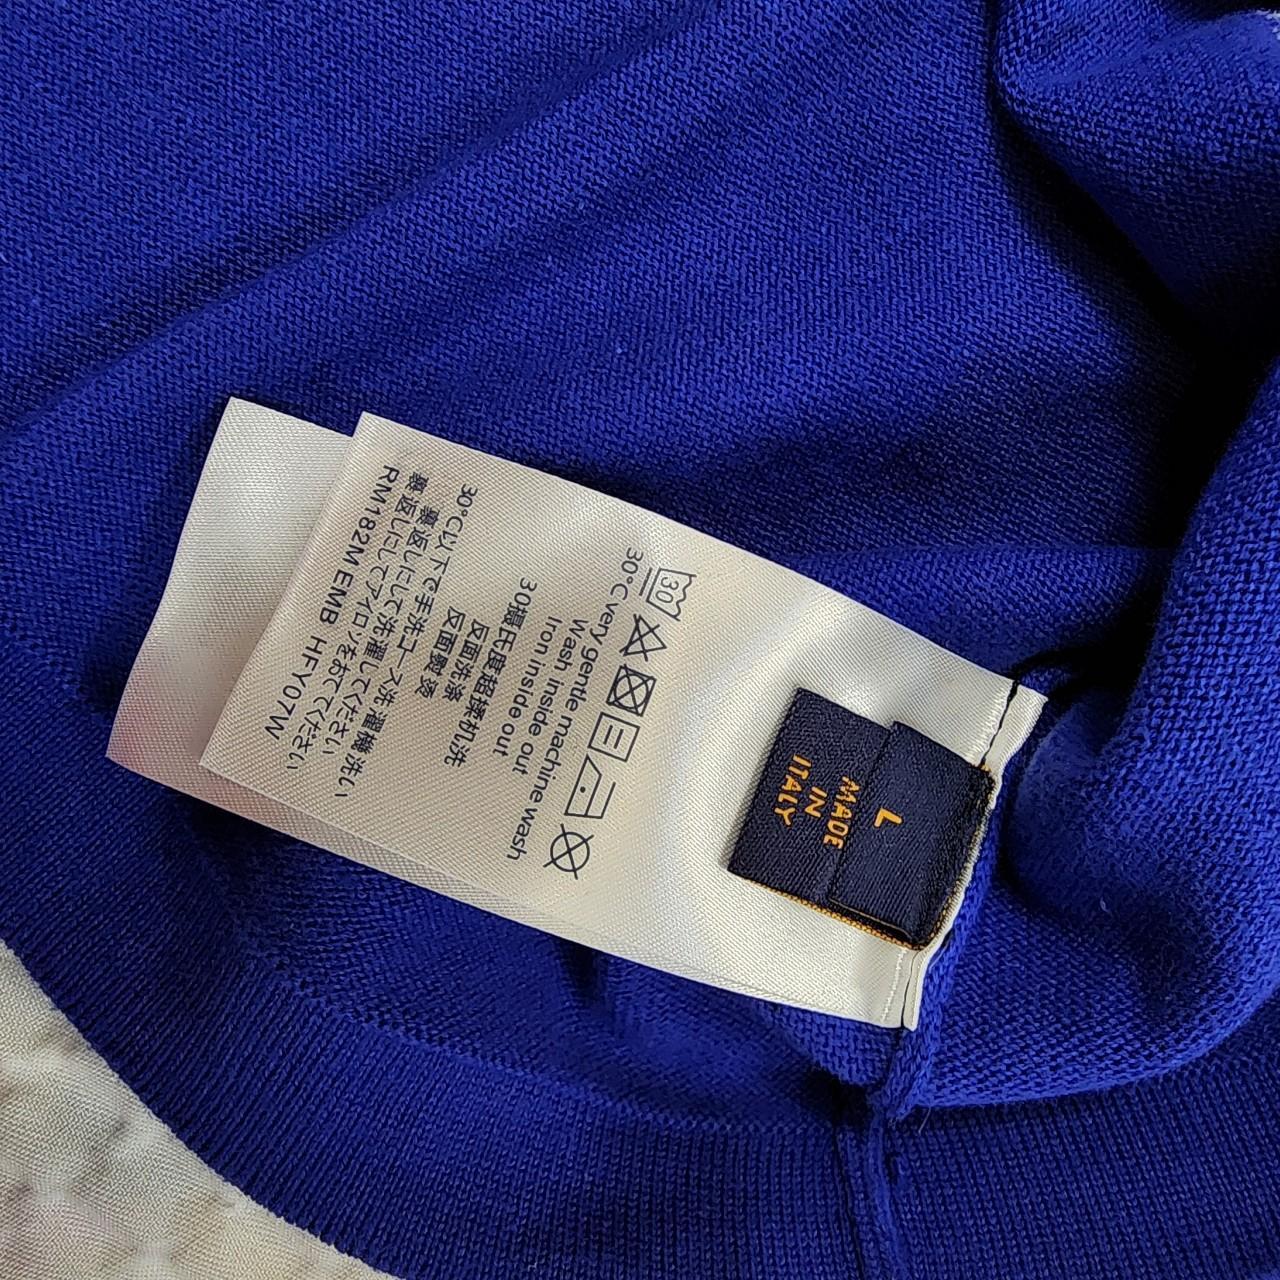 Louis Vuitton inside out shirt - Depop